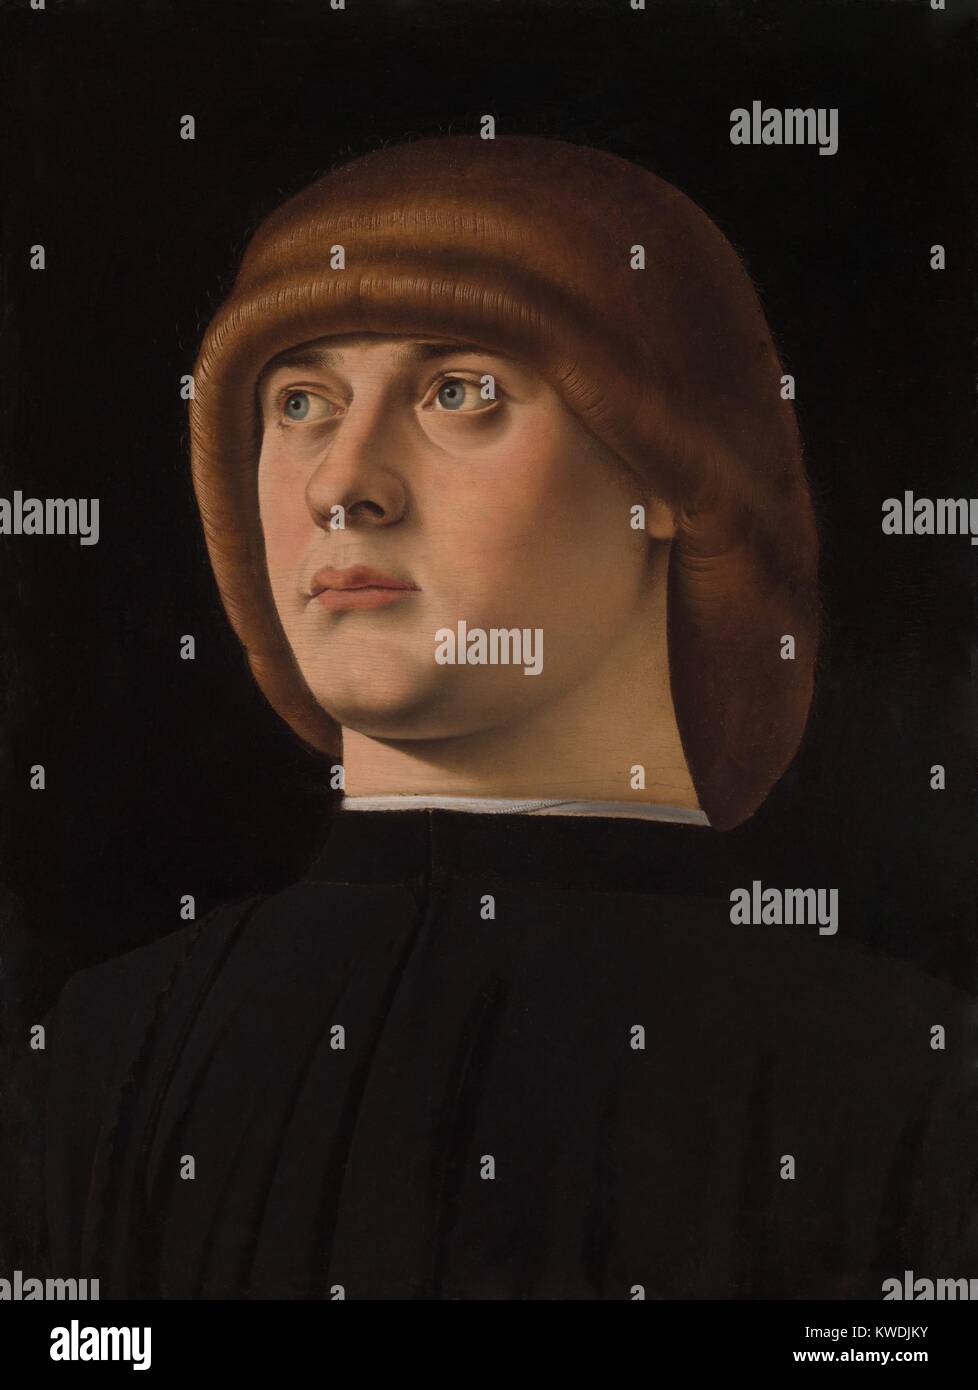 Ritratto di un giovane uomo, da Jacometto, 1480s, pittura rinascimentale italiana, olio su legno. Il distintivo acconciatura, zazzera, era di moda a Venezia nel tardo XV secolo (BSLOC 2017 16 78) Foto Stock